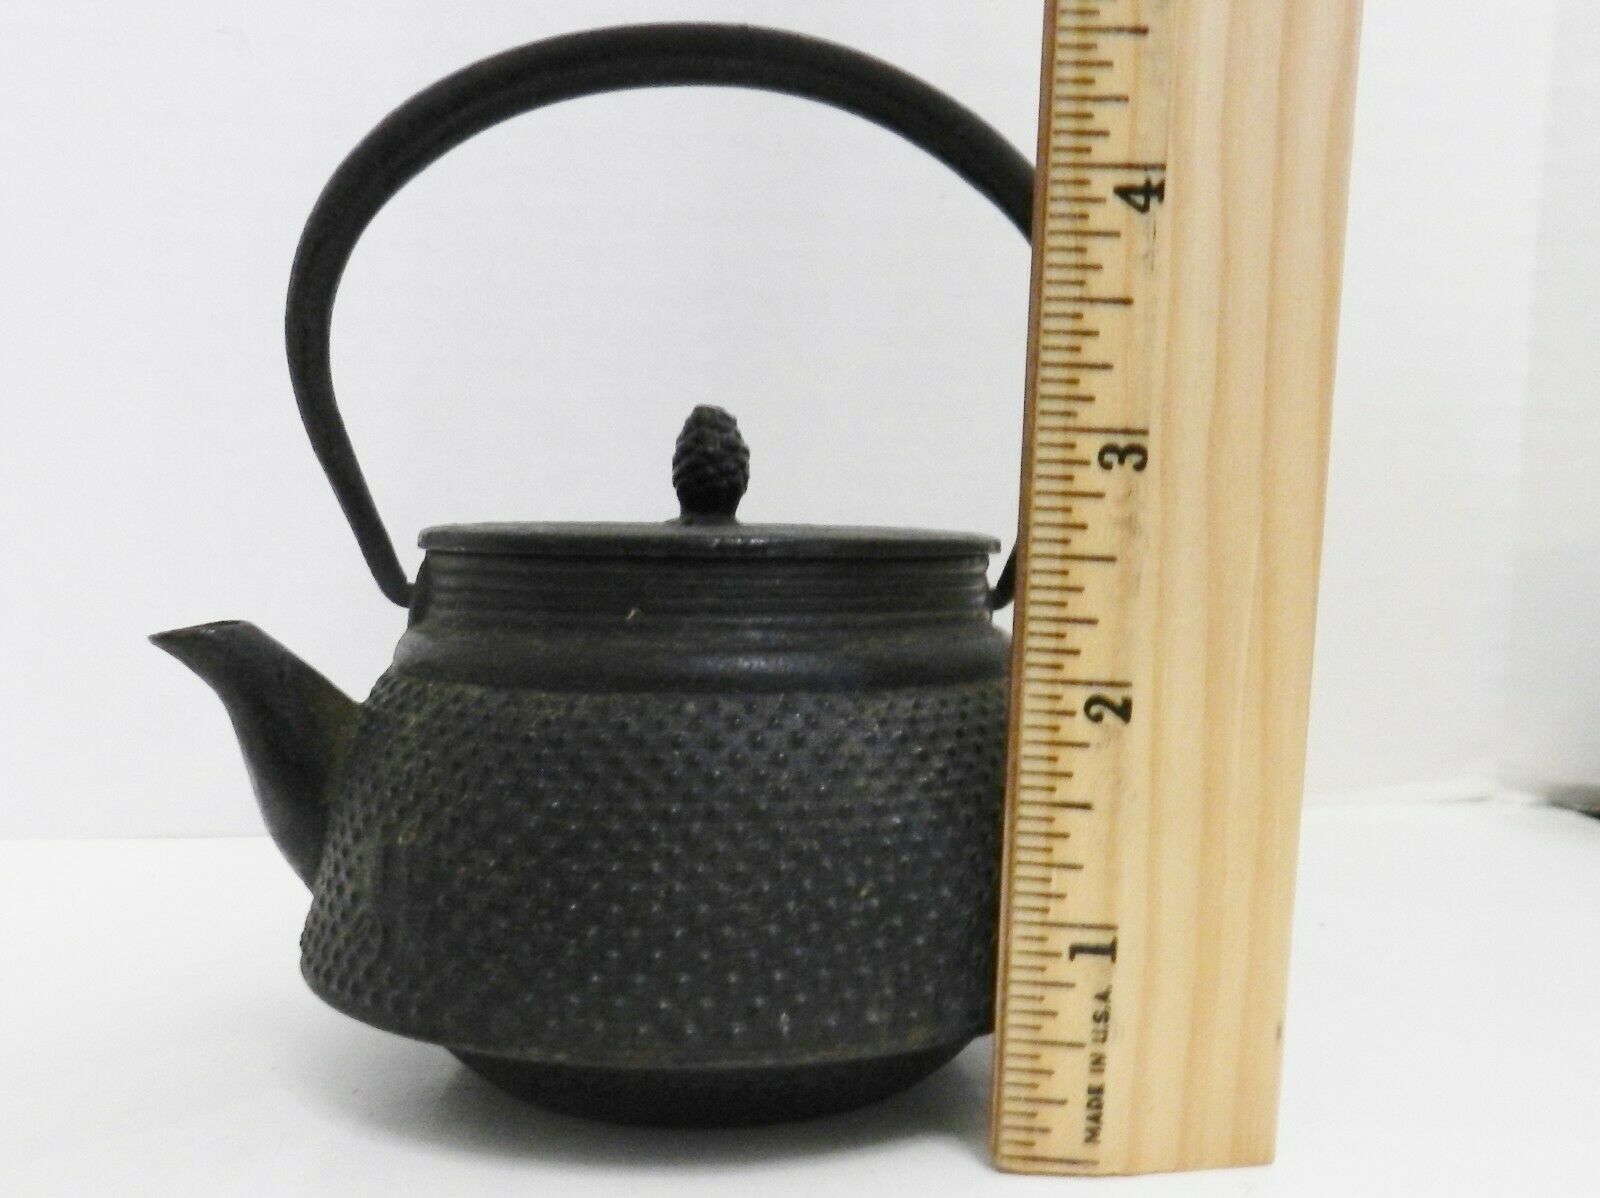 Dd-15 Small Japanese Iron Tetsubin Tea Kettle 4 1/2